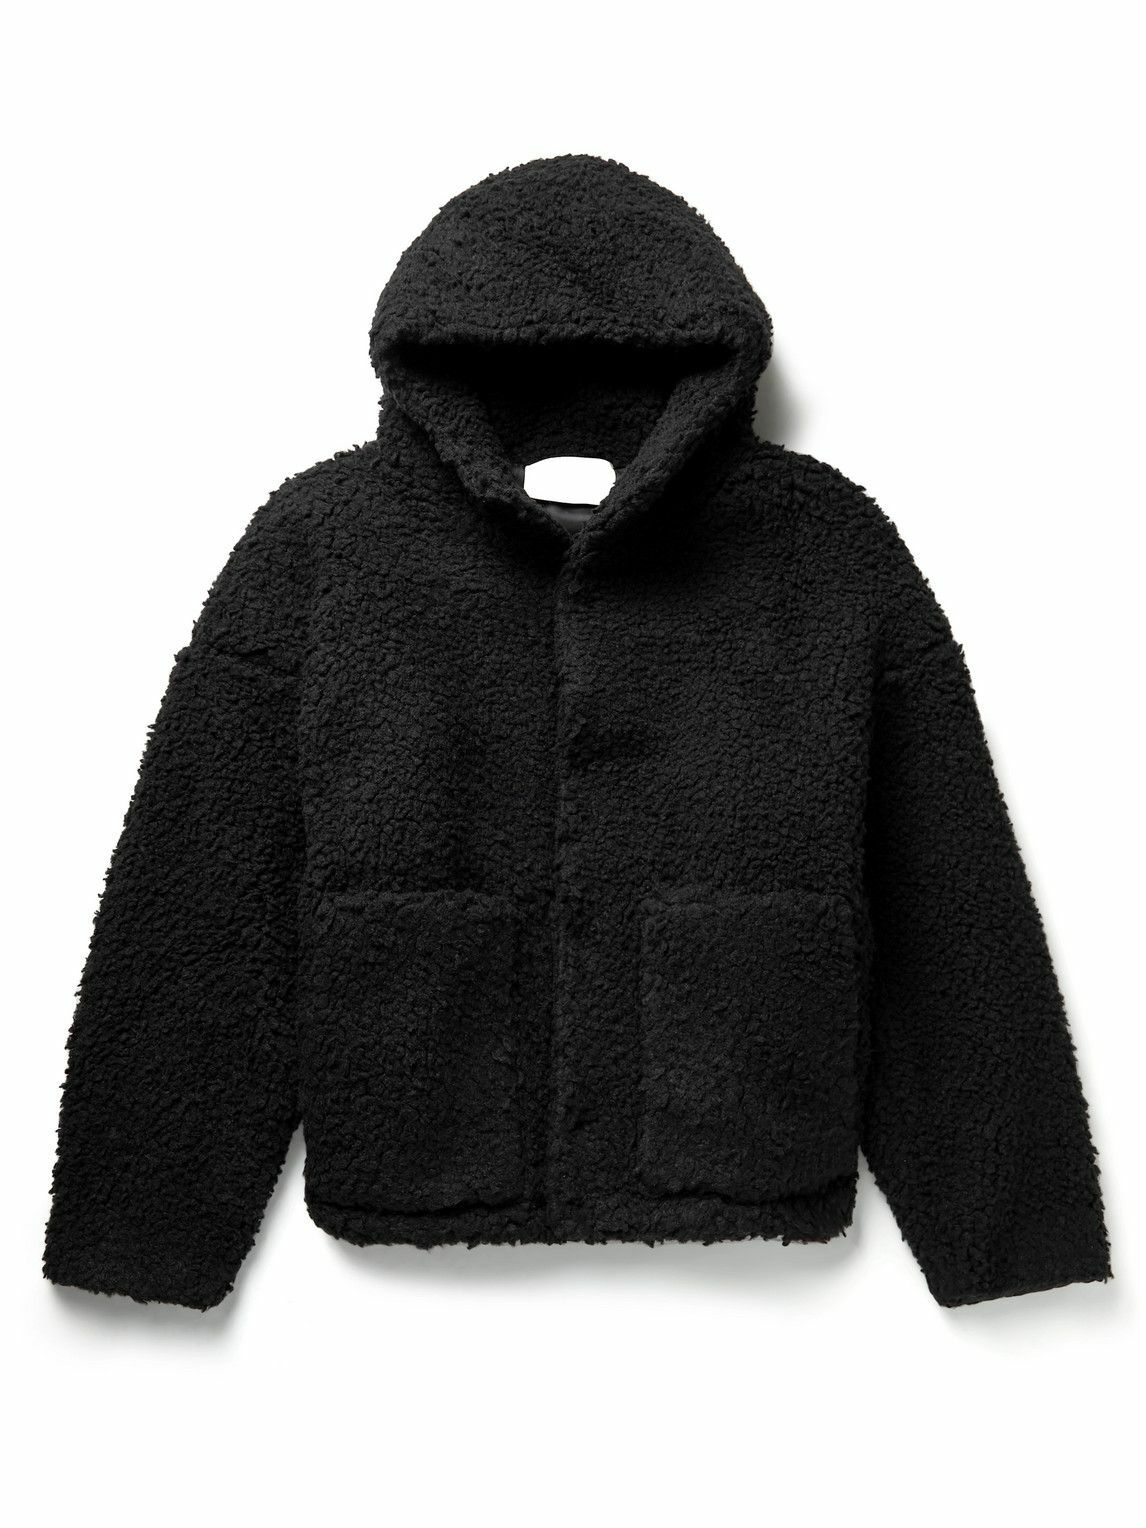 1017 ALYX 9SM - Polar Fleece Hooded Jacket - Black